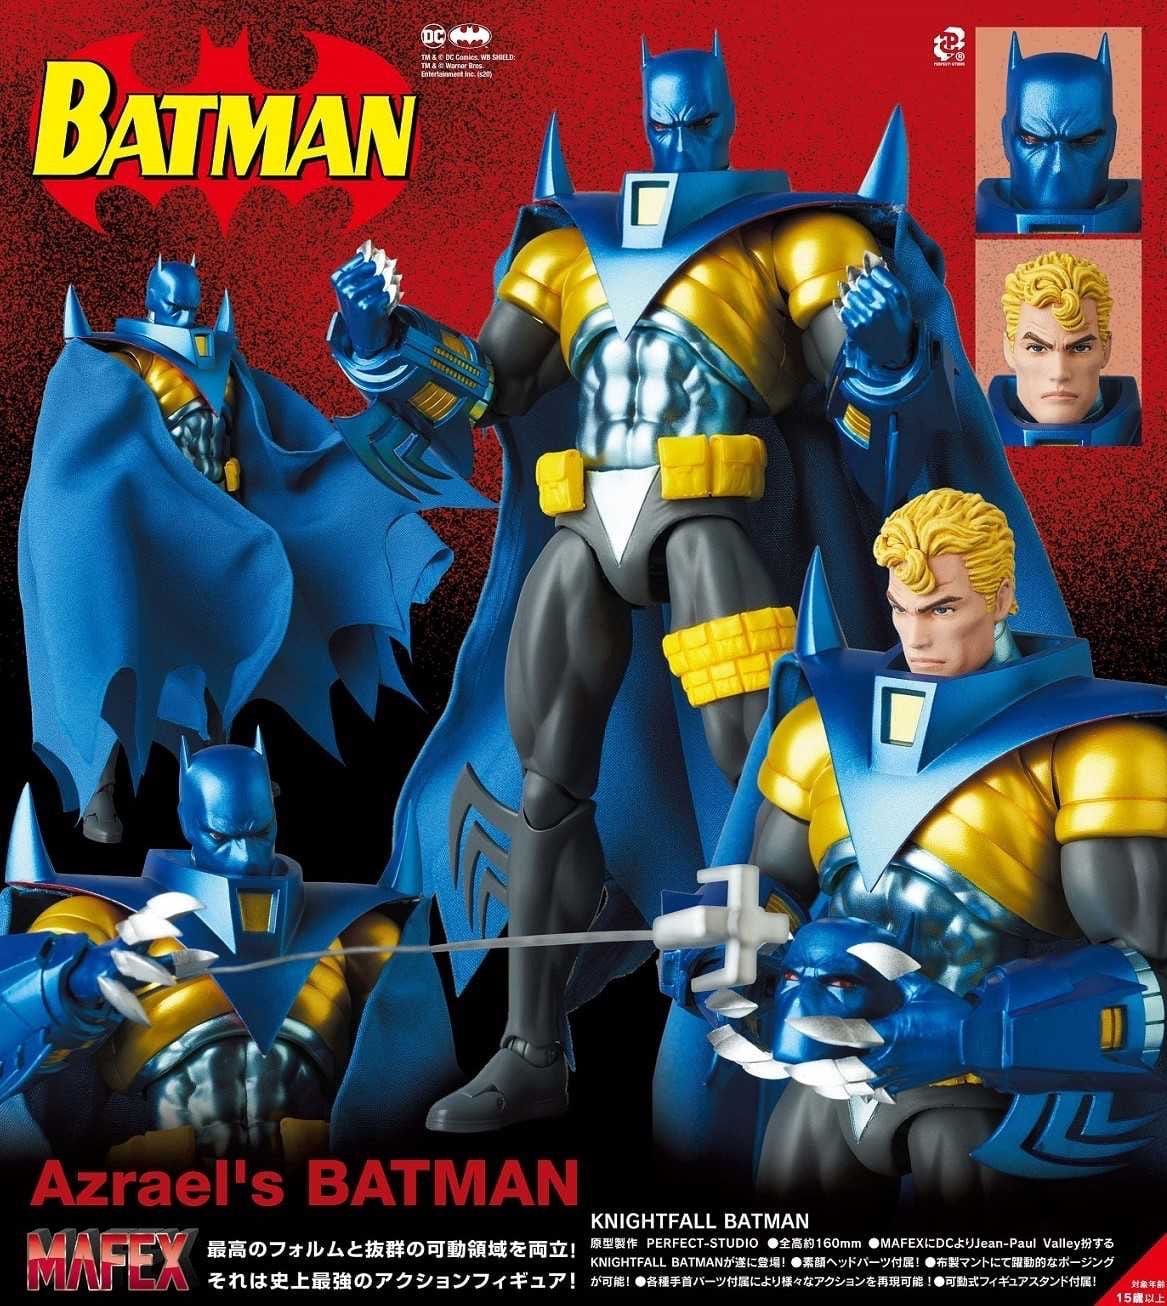 MAFEX No. 144 Batman: Knightfall Azrael Batman Action Figure